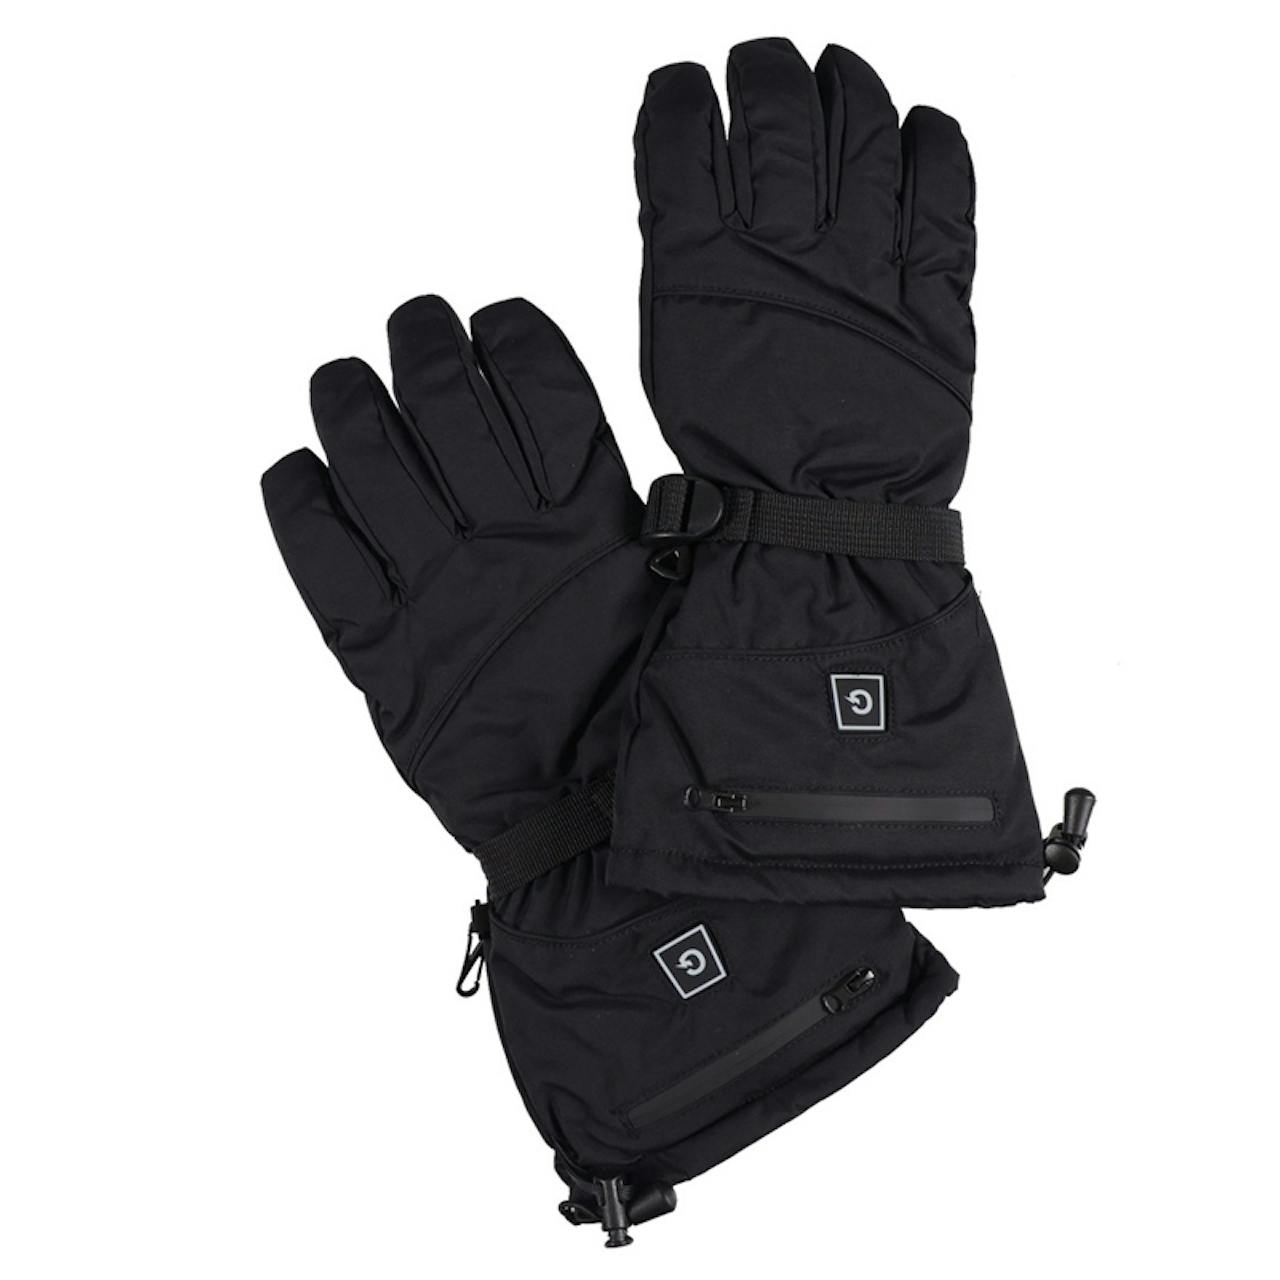 toolant Safety Work Gloves, Medium, Red & Black, Unisex